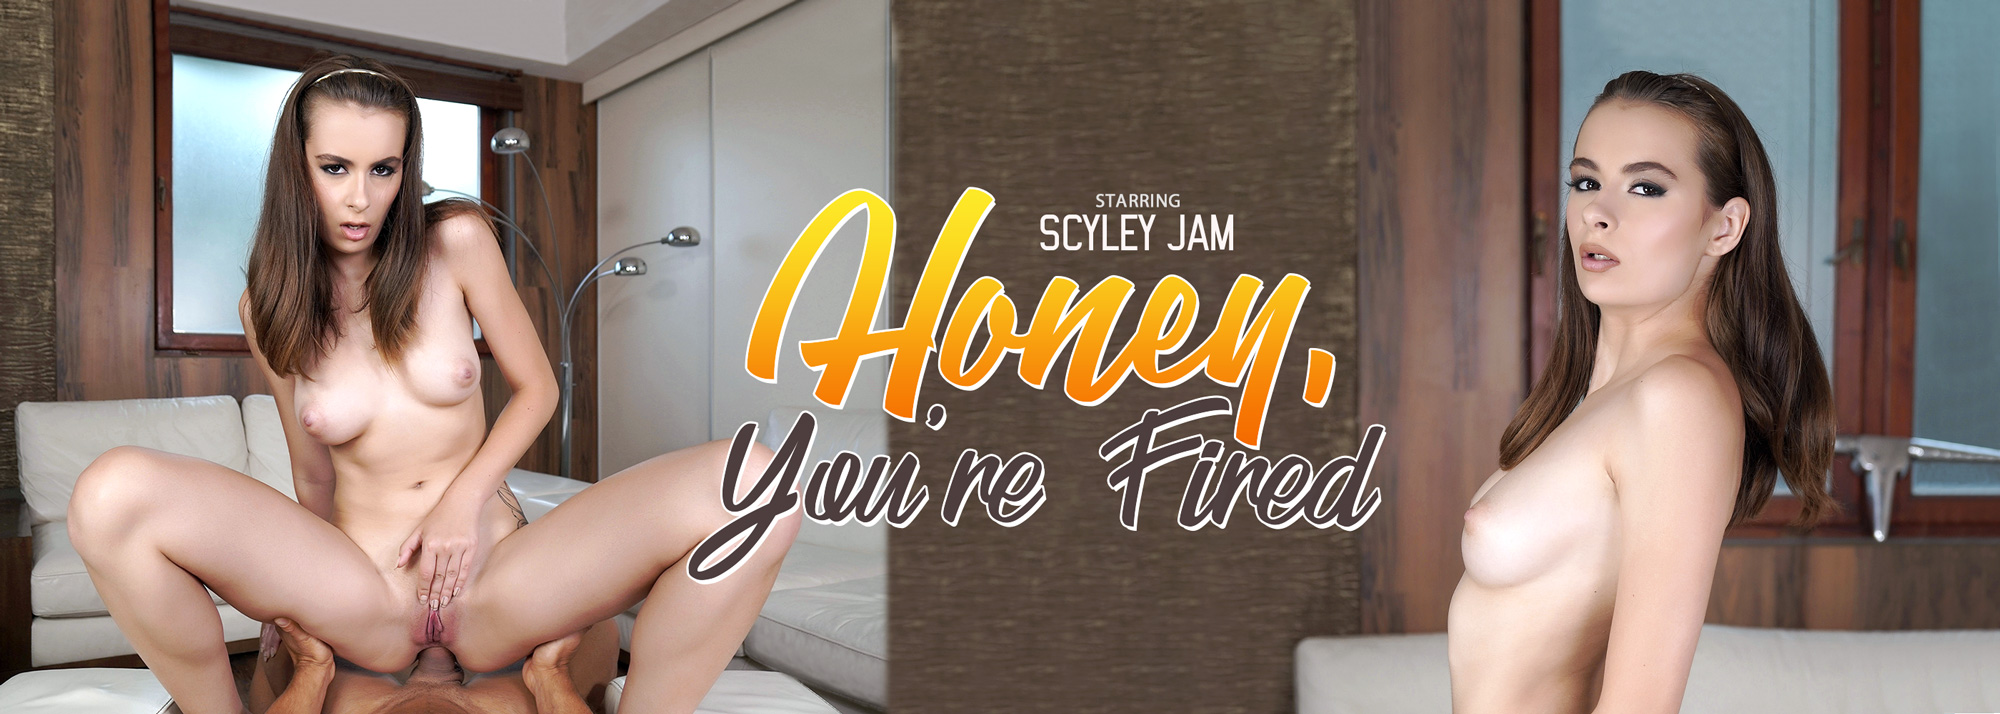 Honey, You're Fired - VR Porn Video, Starring: Scyley Jam